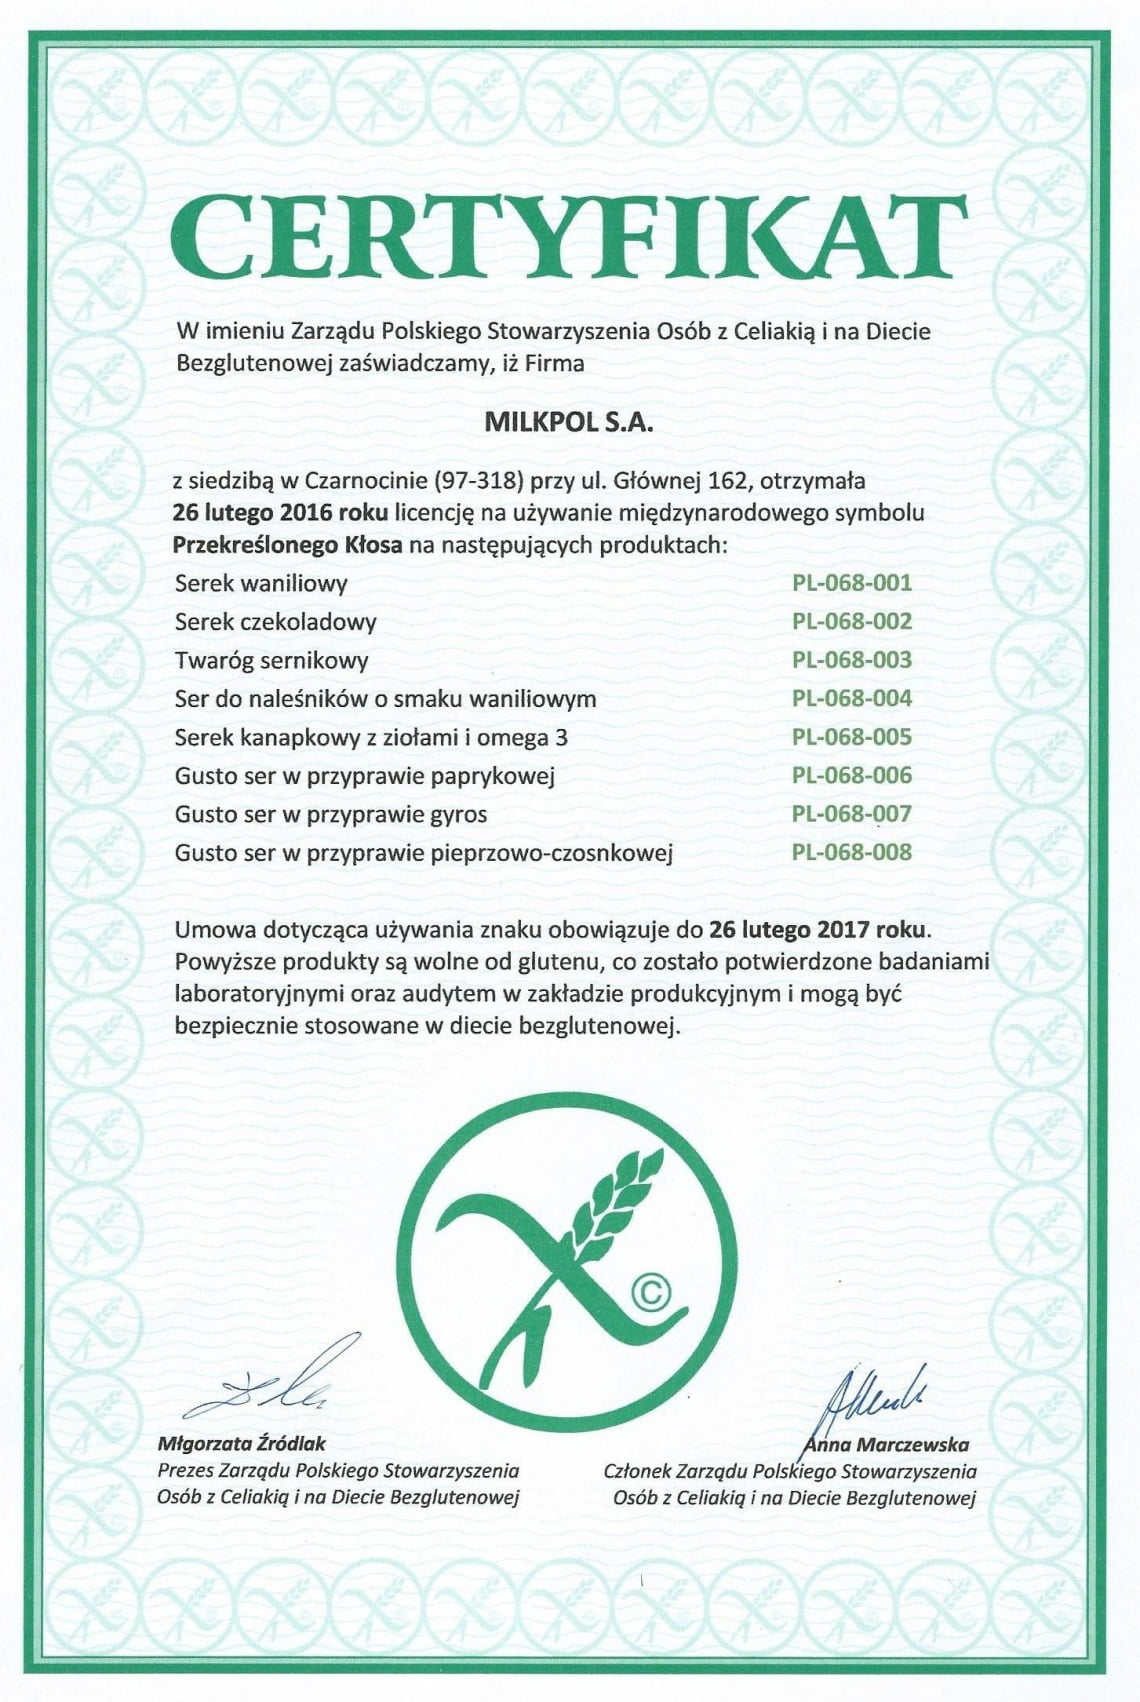 Certyfikat Zarządu Polskiego Stworzyszenia Osób z Celiakią i na Diecie Bezglutenowej